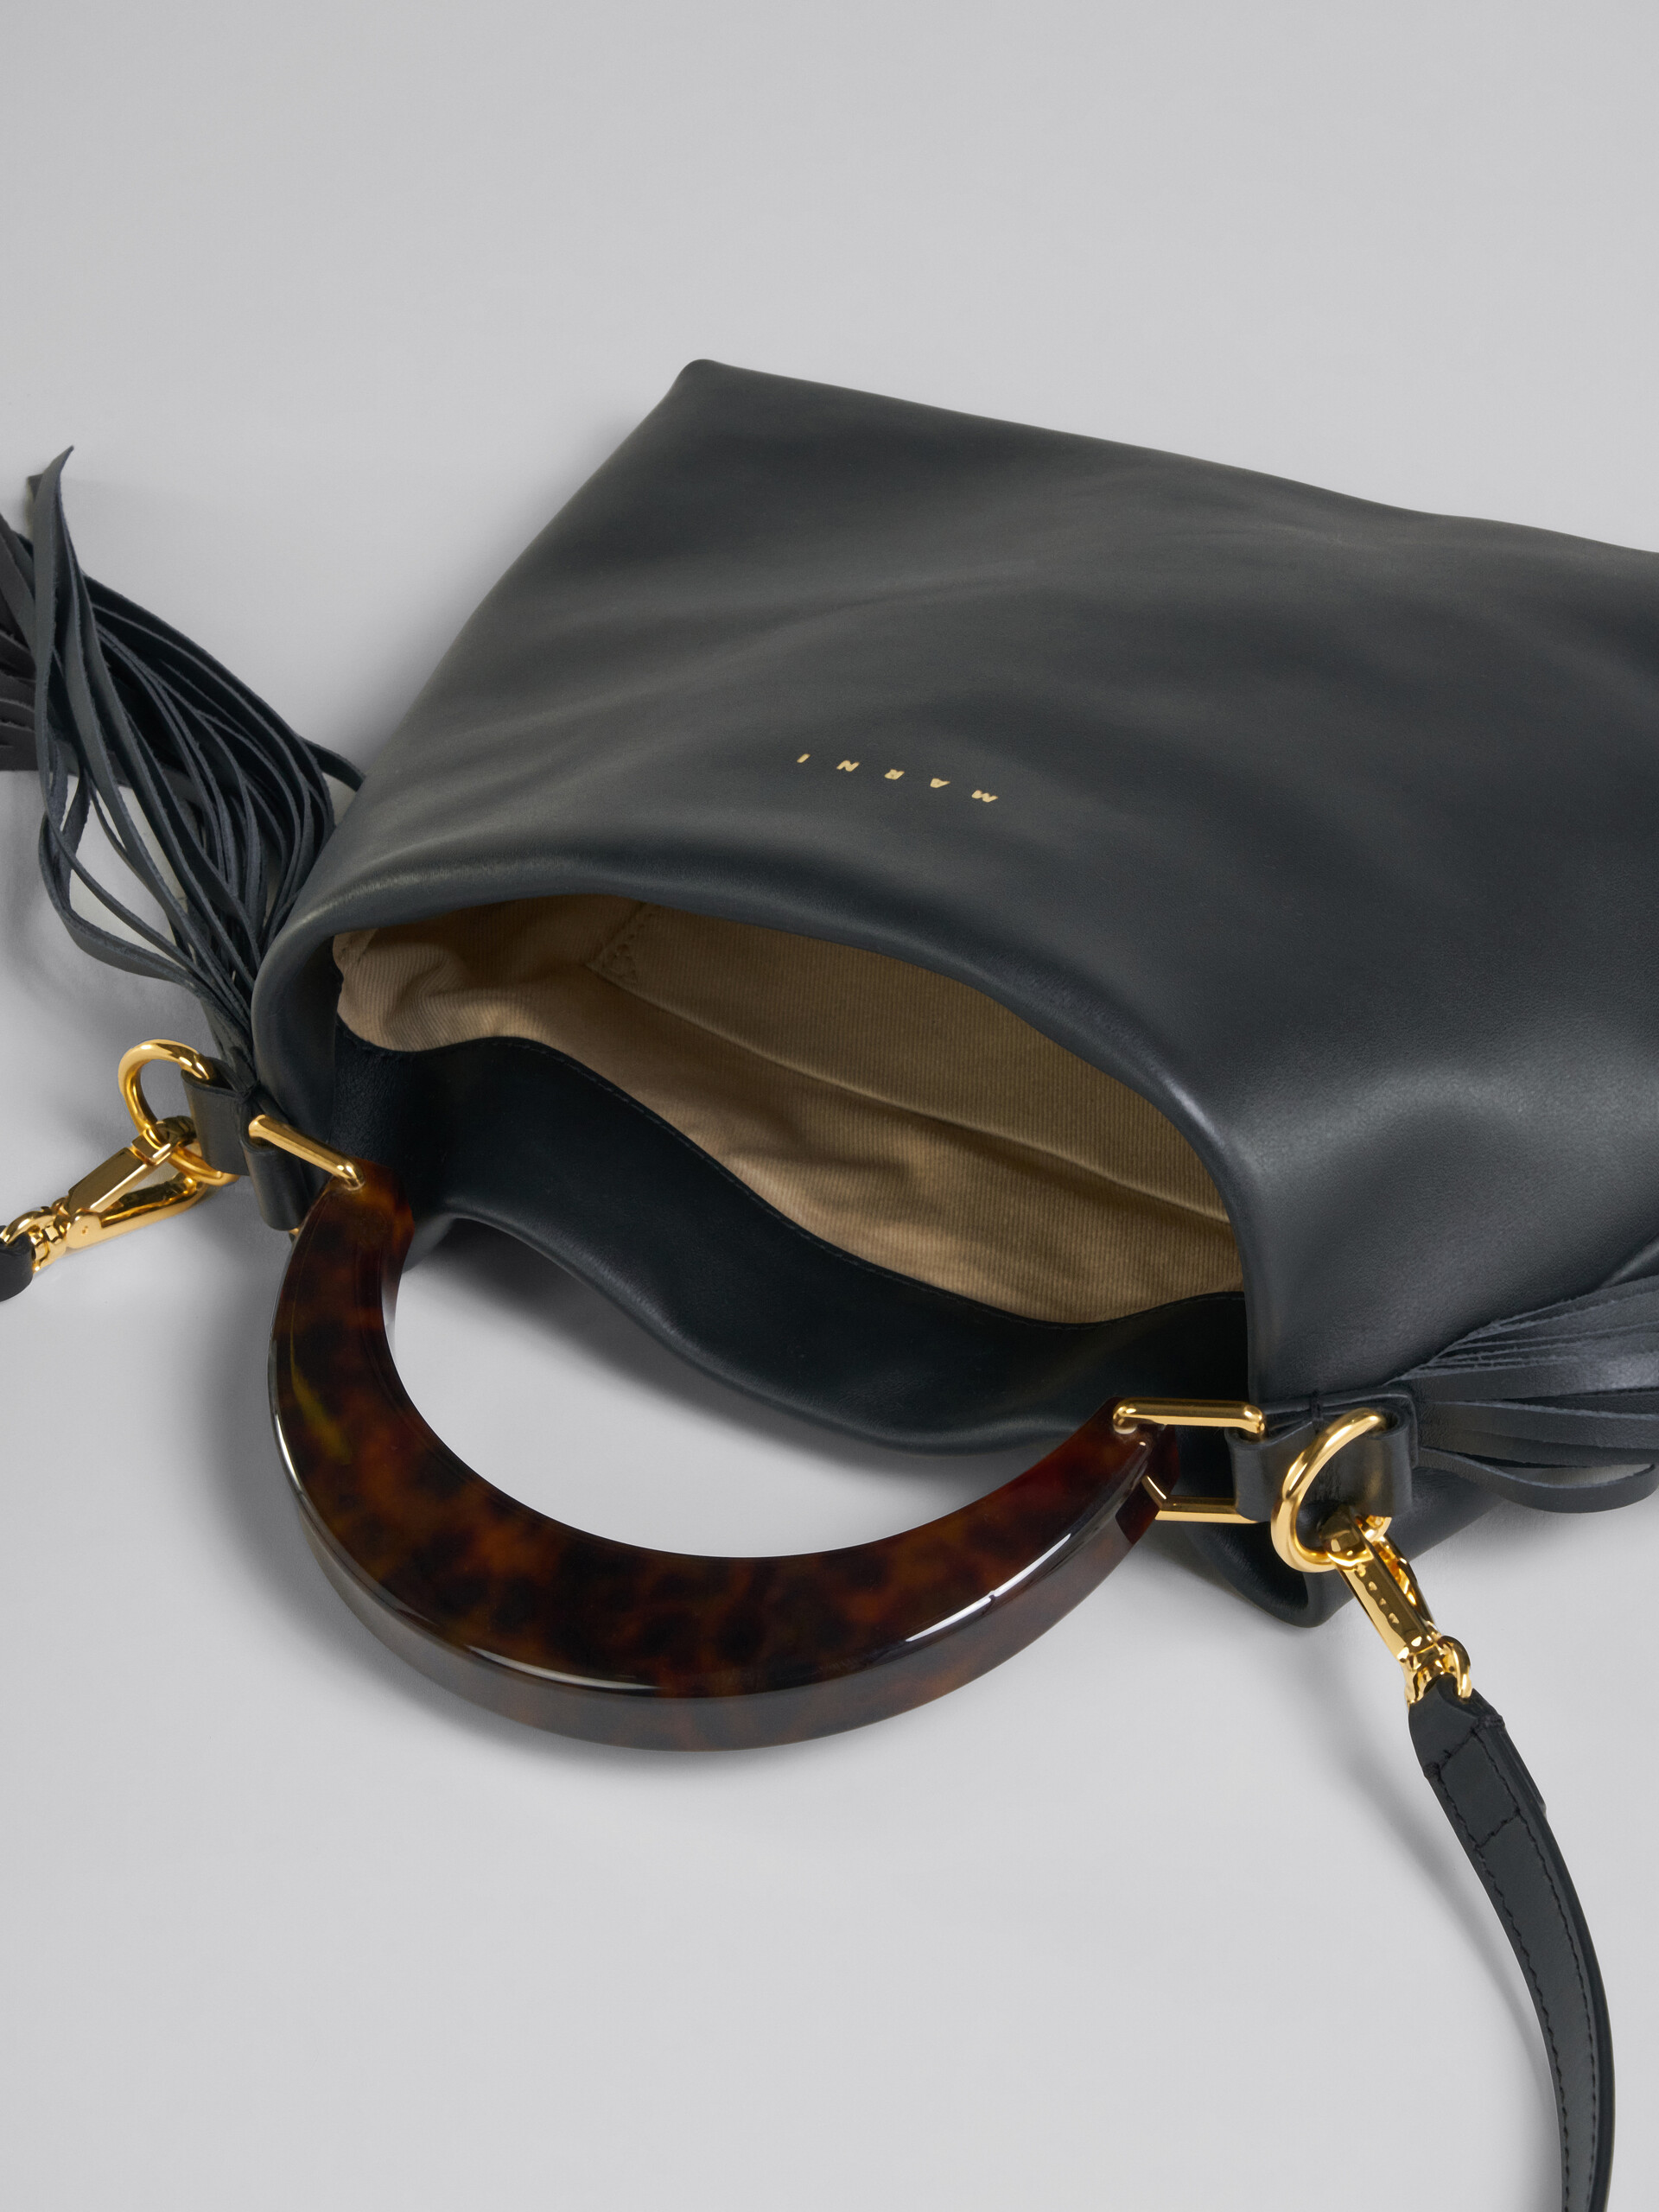 Venice Bag Piccola in pelle nera con frange - Borse a spalla - Image 4